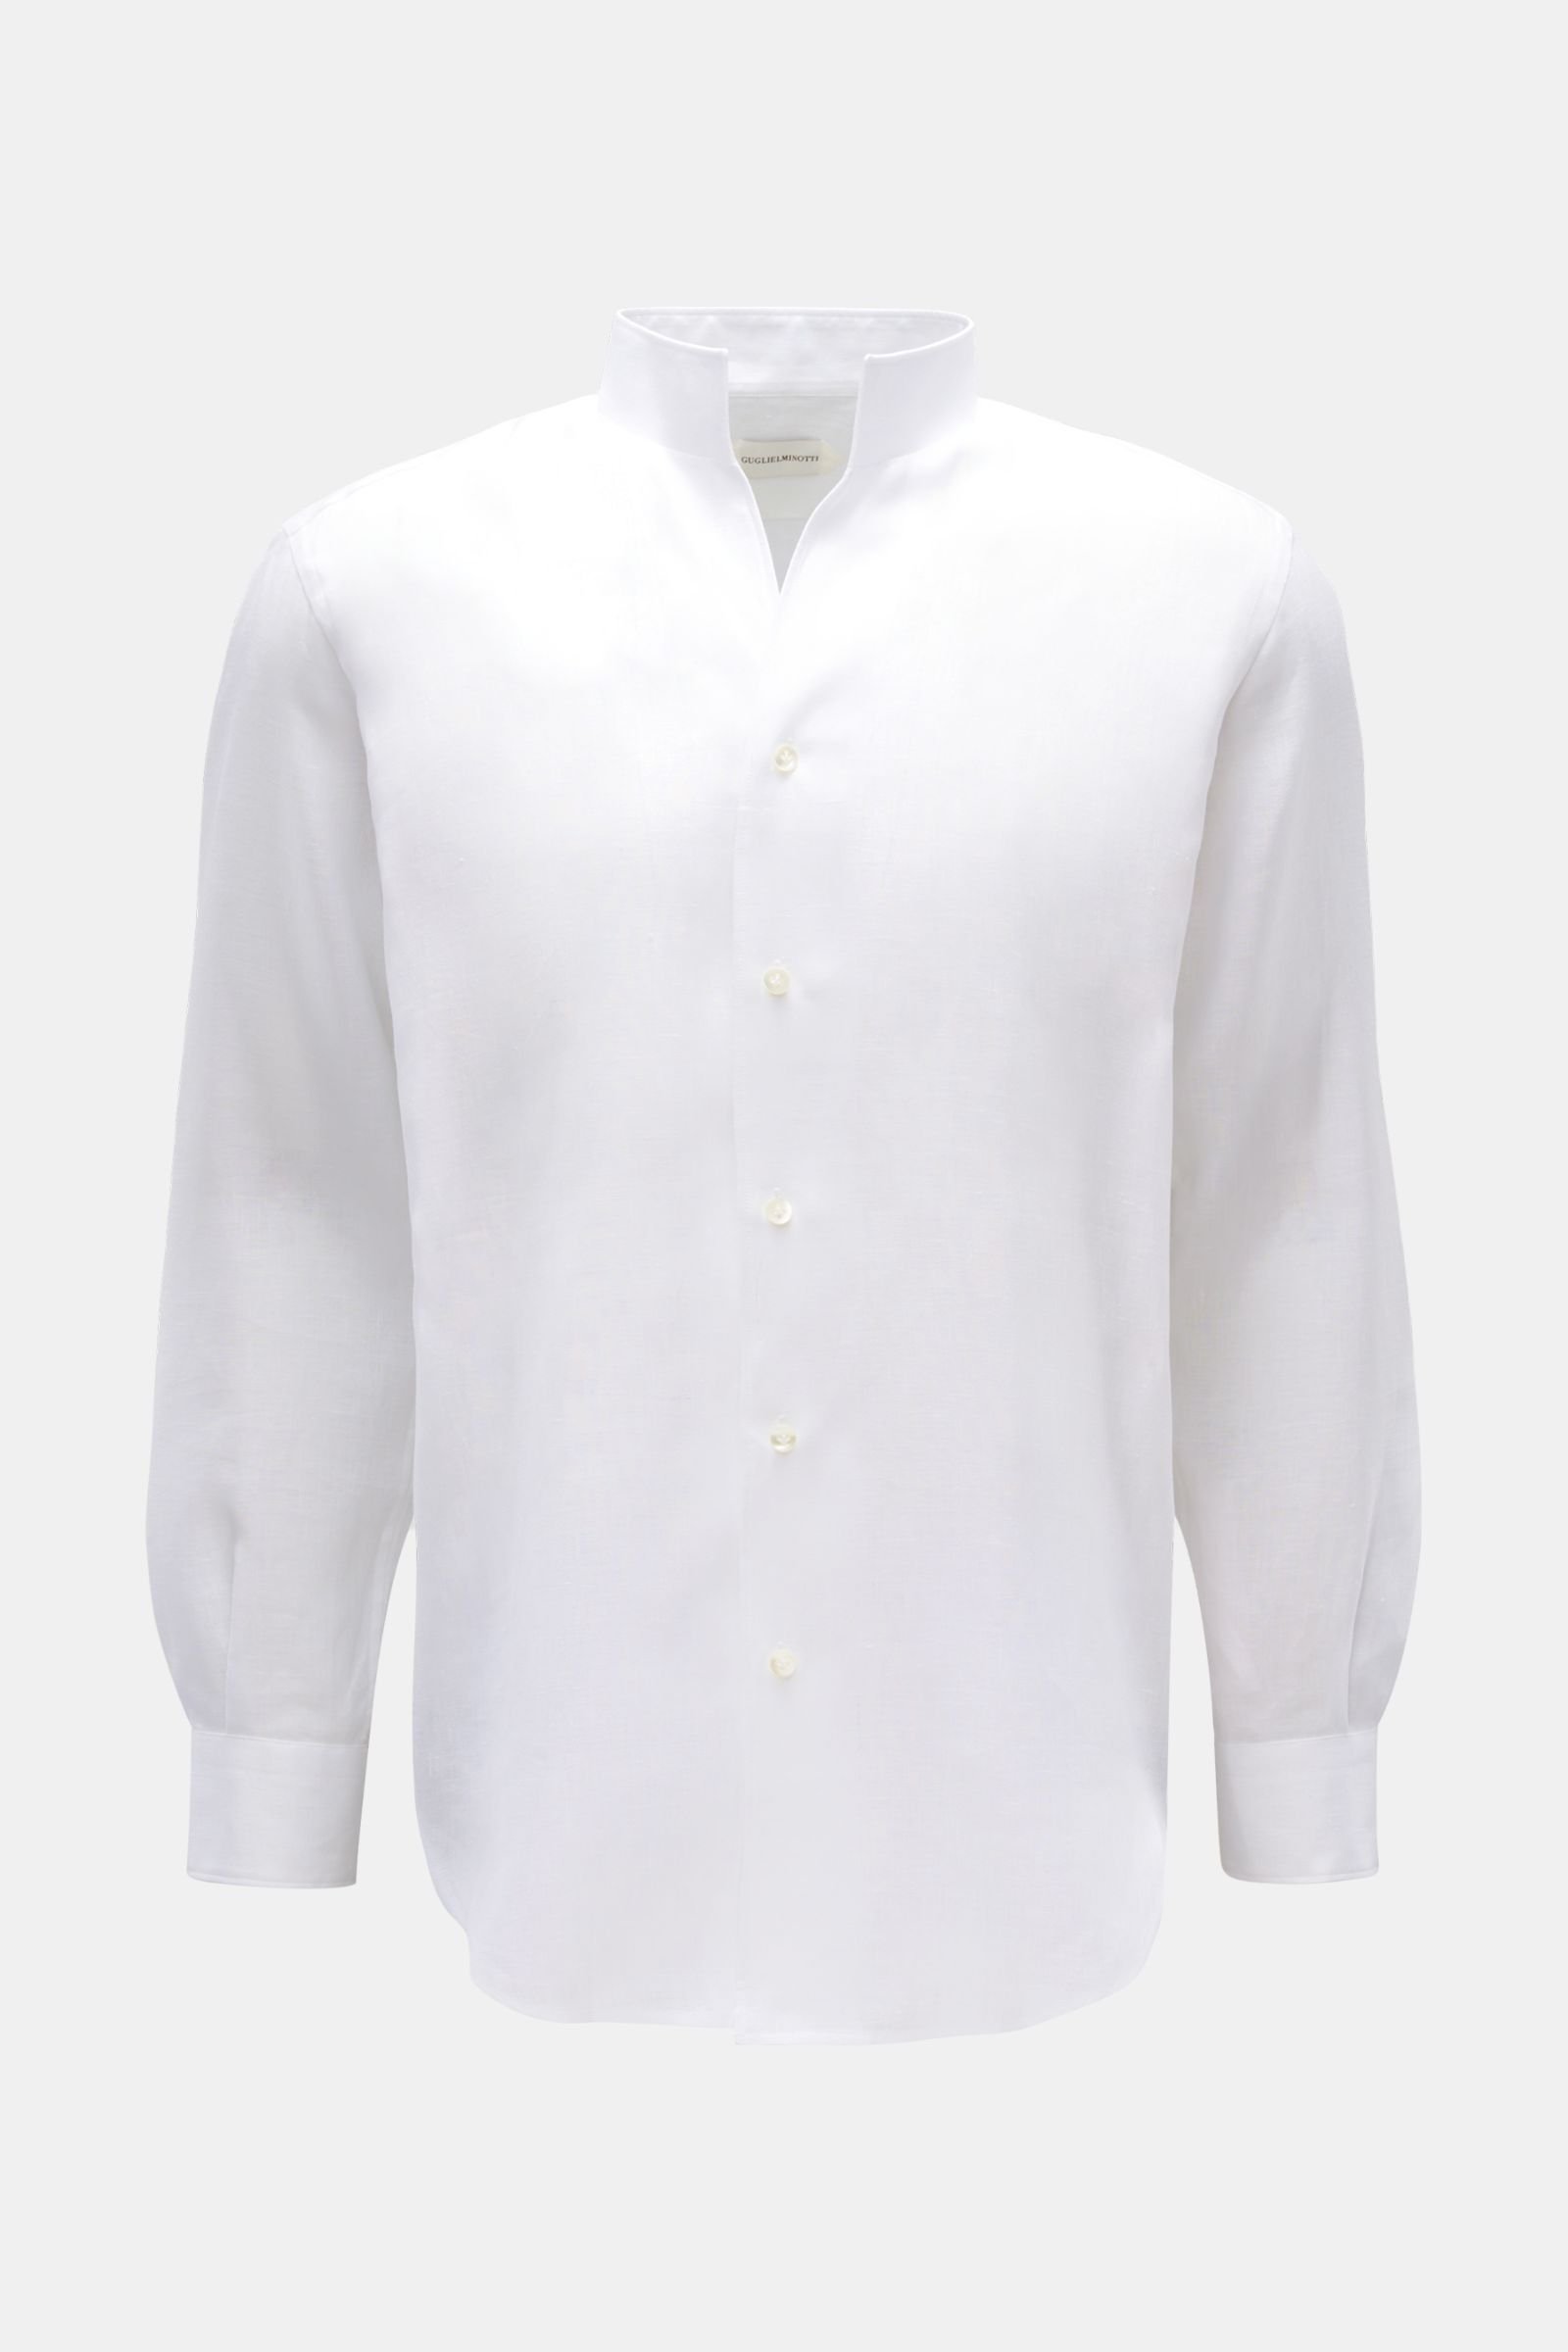 Linen shirt standing collar white